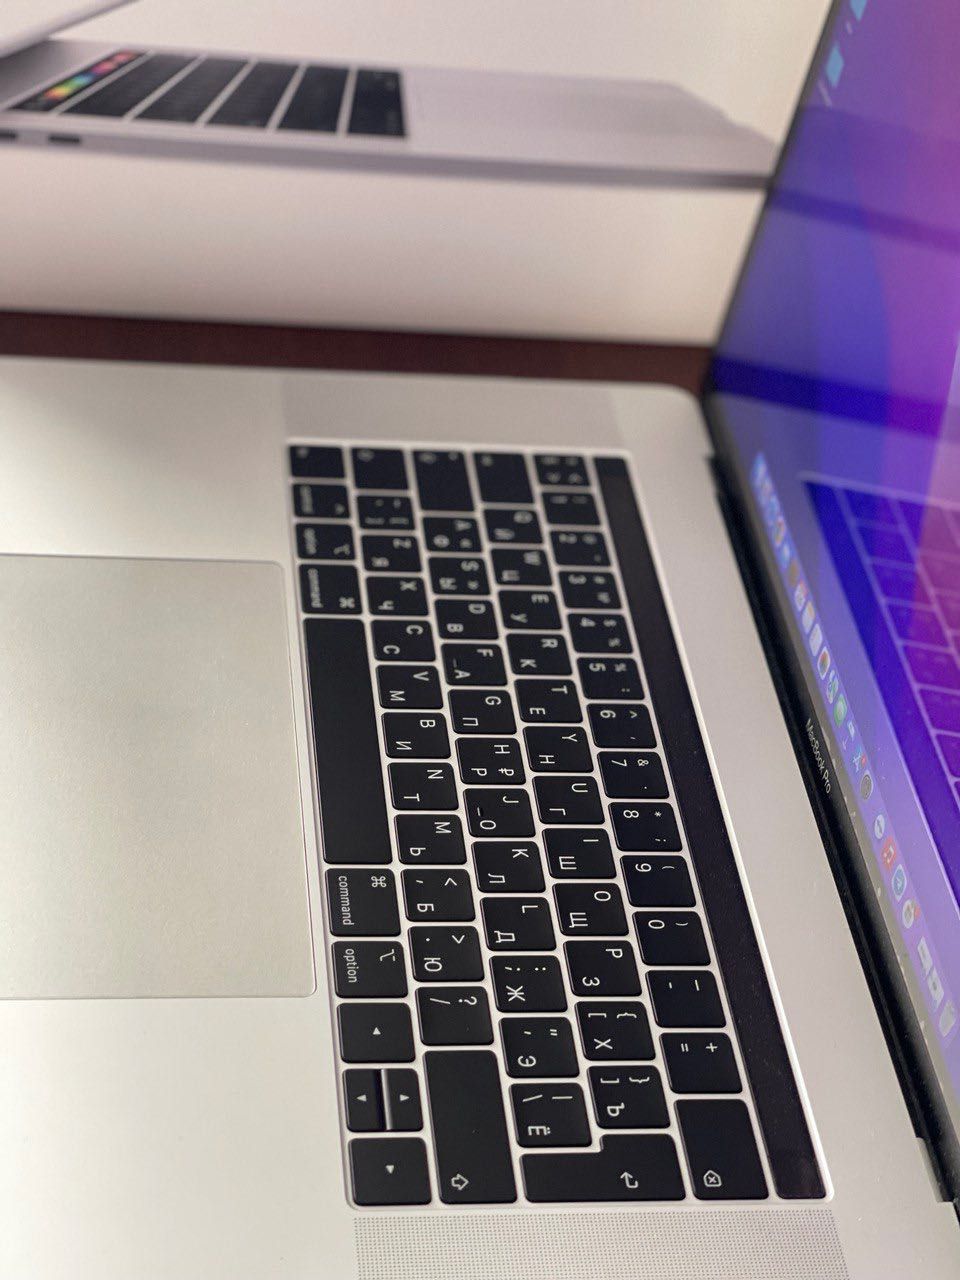 MacBook Pro 15-inch 2019